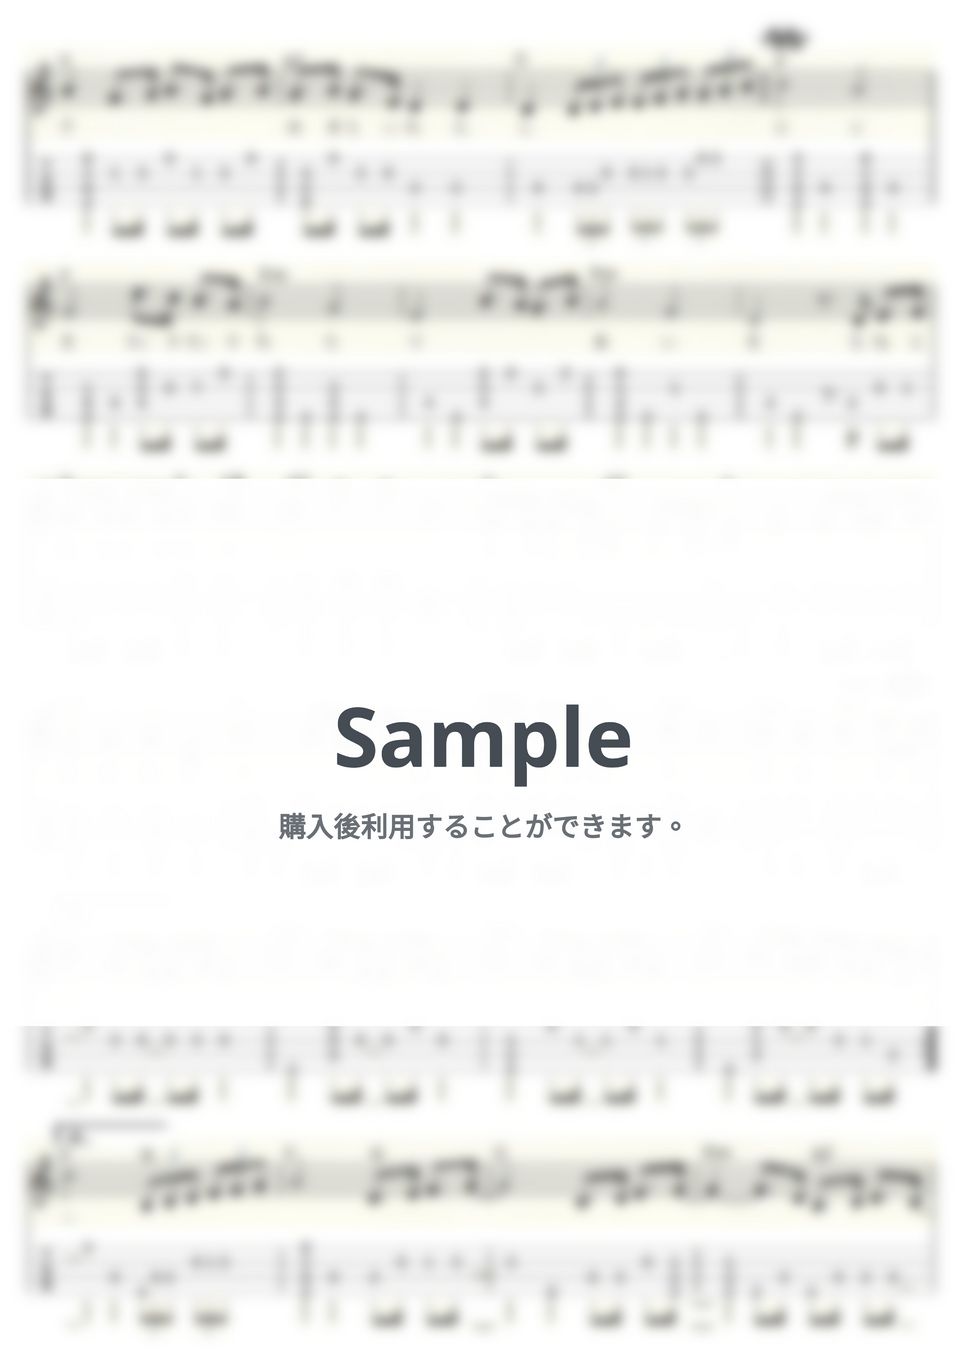 天地真理 - 虹をわたって (ｳｸﾚﾚｿﾛ/Low-G/中級) by ukulelepapa